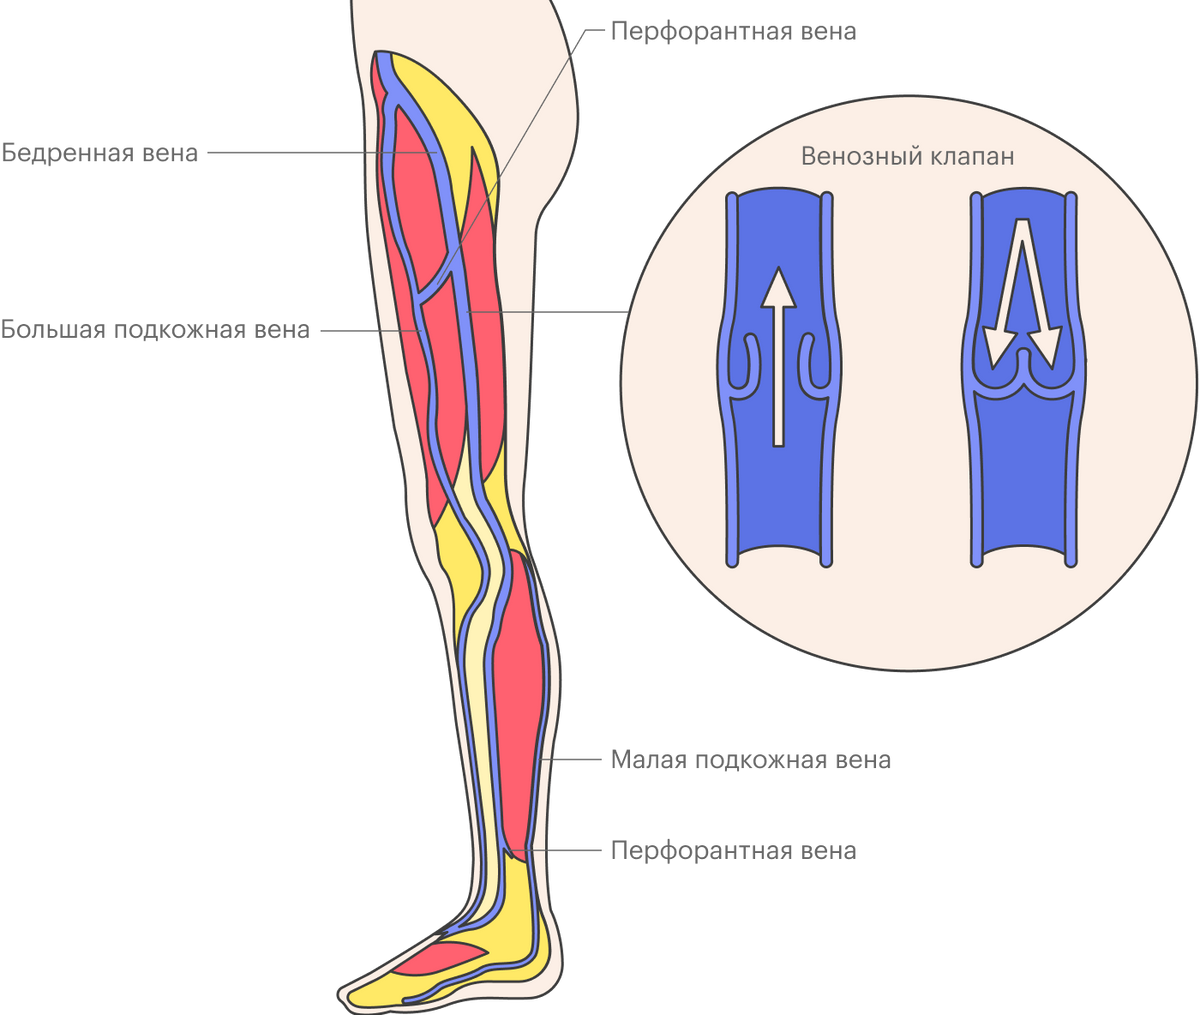 Вены ног делят на&nbsp;глубокие и&nbsp;поверхностные, они связаны перфорантными венами. Большая подкожная вена и&nbsp;малая подкожная вена — поверхностные вены, которые чаще всего становятся «источником» варикоза, а&nbsp;бедренная вена — это осевая глубокая вена. При&nbsp;варикозном расширении поверхностных вен происходит выброс — «утечка» крови — из&nbsp;глубоких вен в поверхностные в&nbsp;местах их соединений или по&nbsp;перемычкам — перфорантным венам. Также внутри вен есть клапаны, мешающие крови двигаться вниз. При&nbsp;варикозном расширении поверхностных вен клапаны деформируются и&nbsp;разрушаются, постепенно развивается венозная недостаточность. Недостаточность клапанов может быть и&nbsp;в&nbsp;глубоких венах, но&nbsp;встречается такое реже